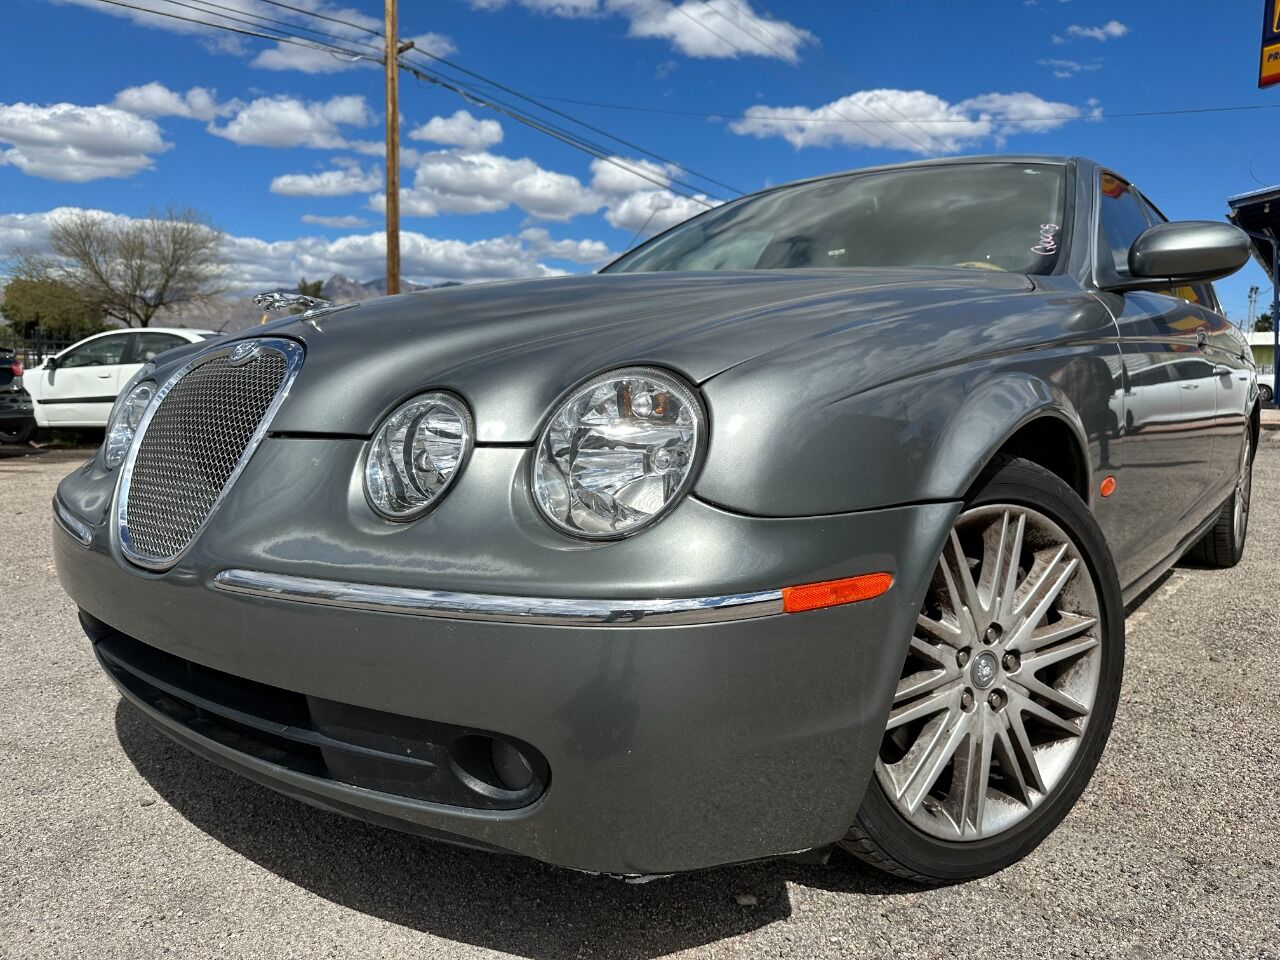 Jaguar S-Type For Sale - Carsforsale.com®